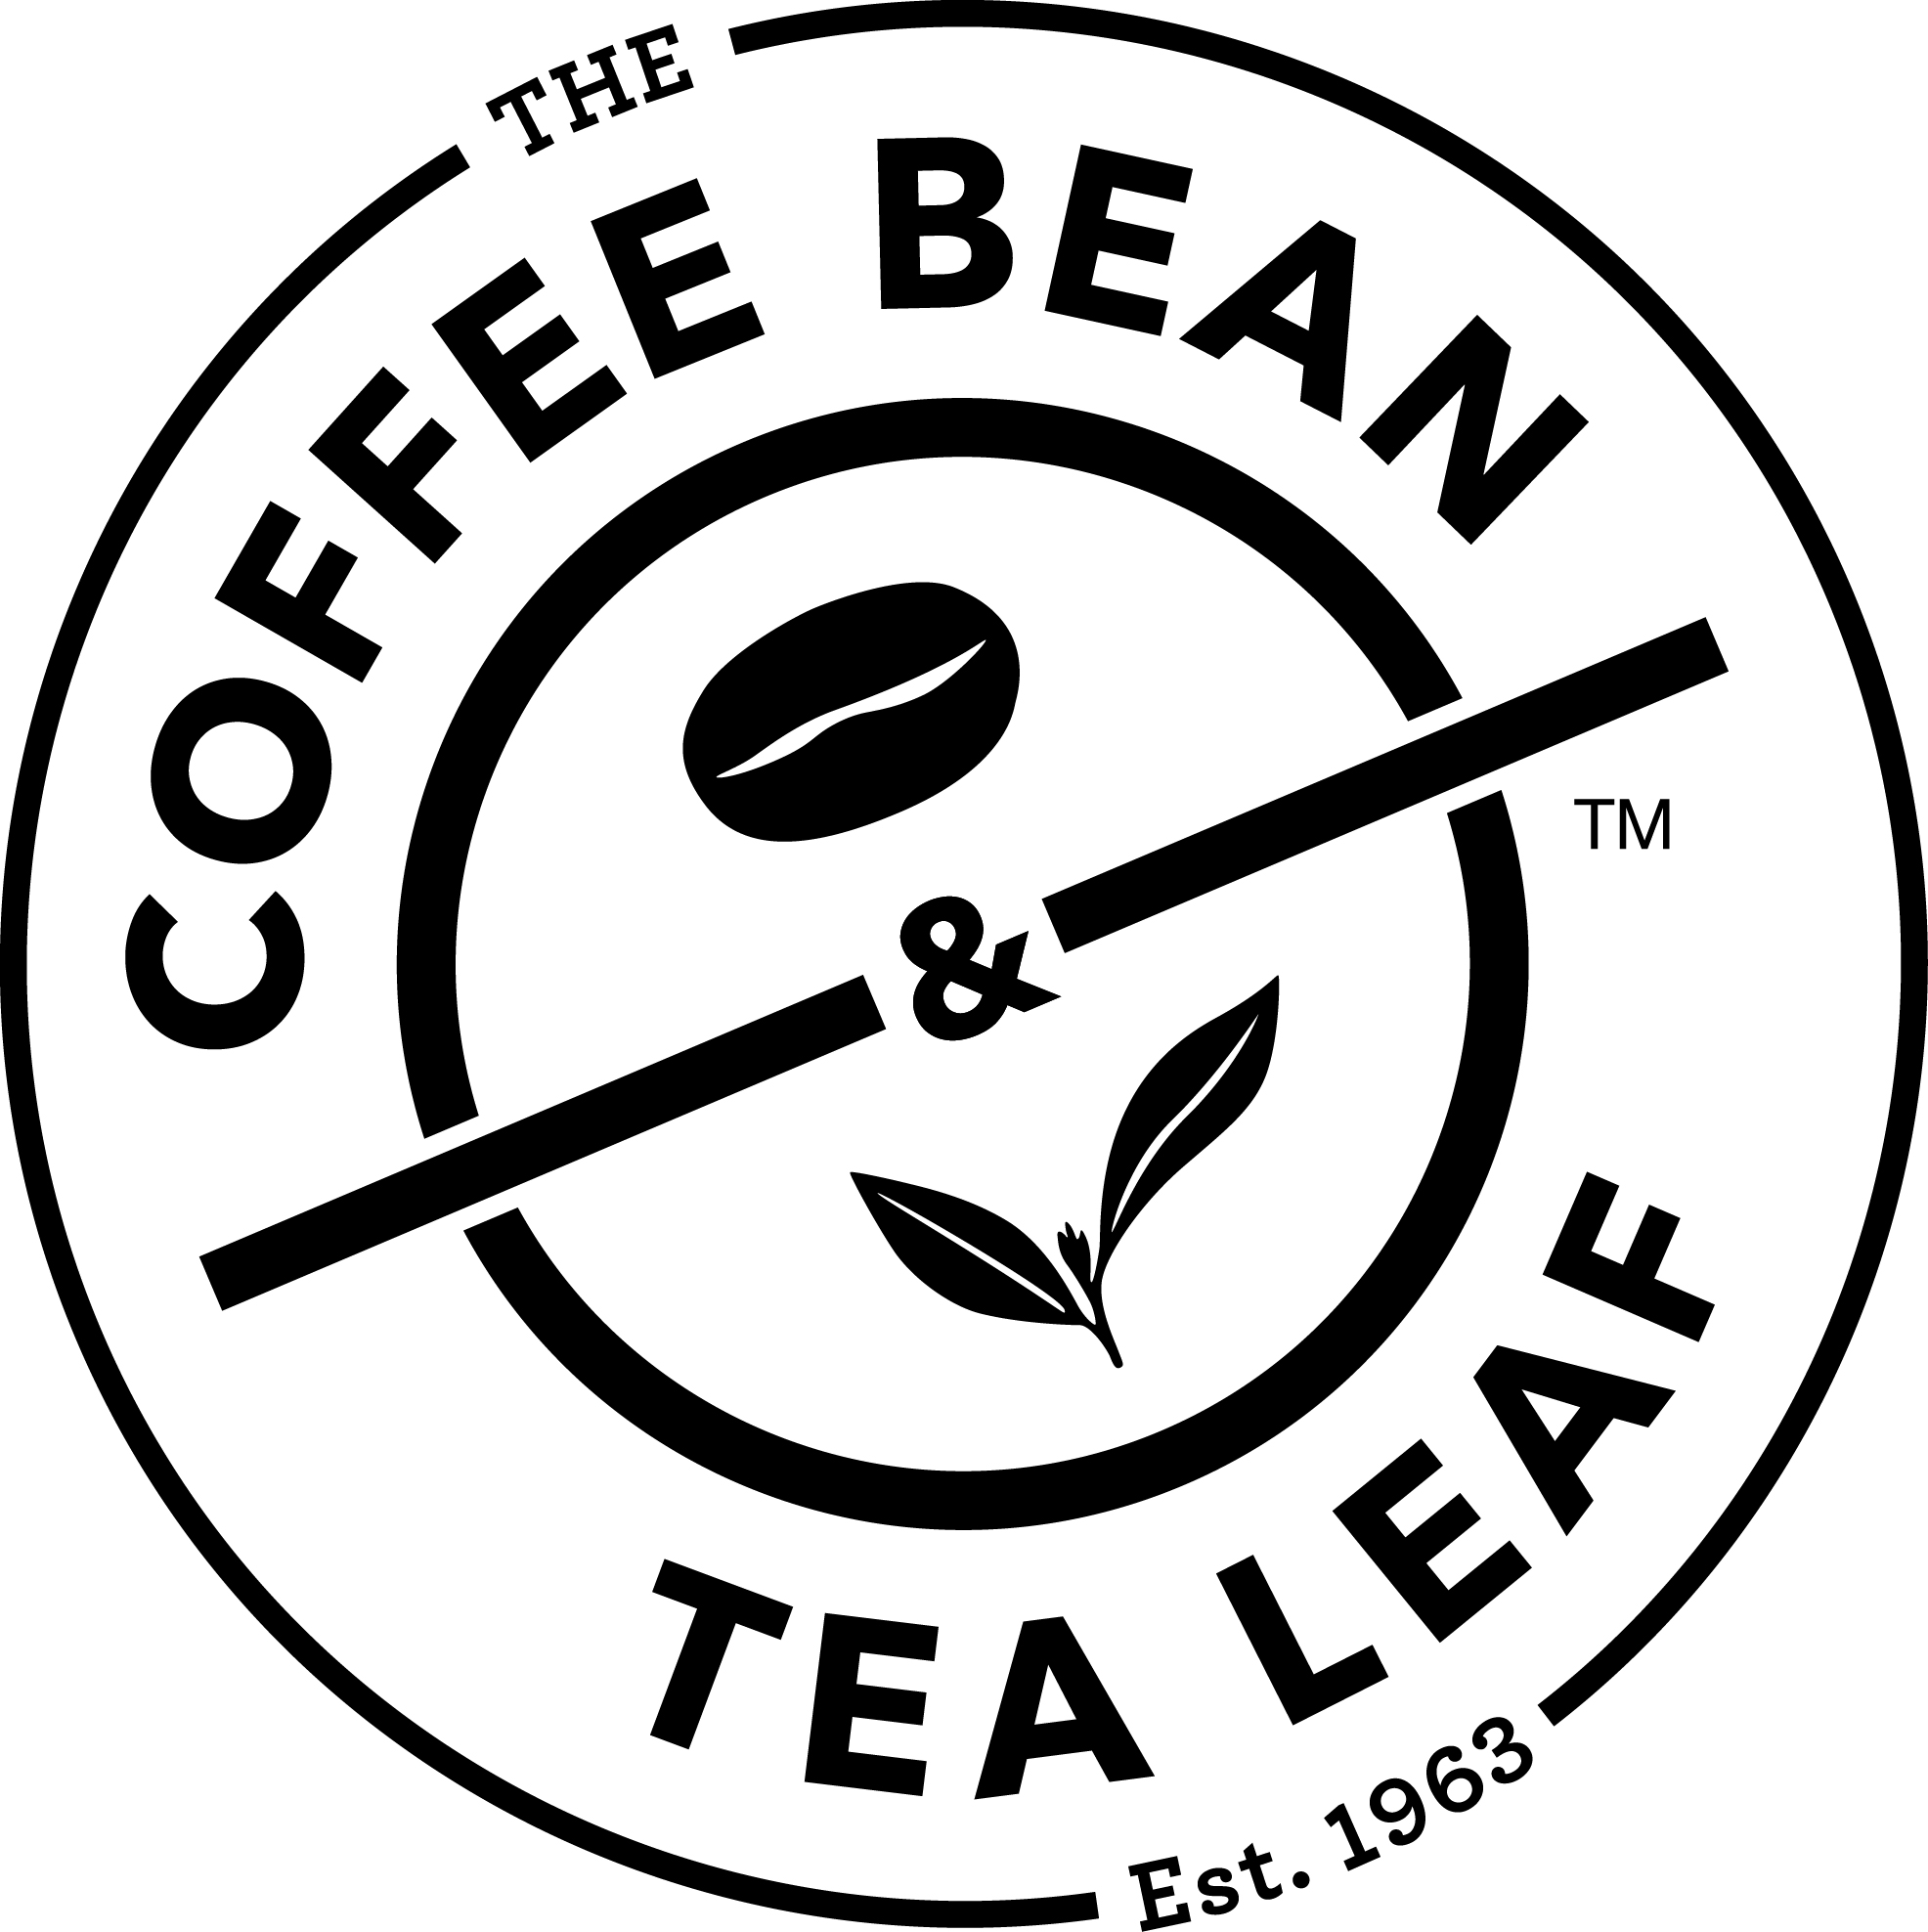 Coffee Bean (Silver)